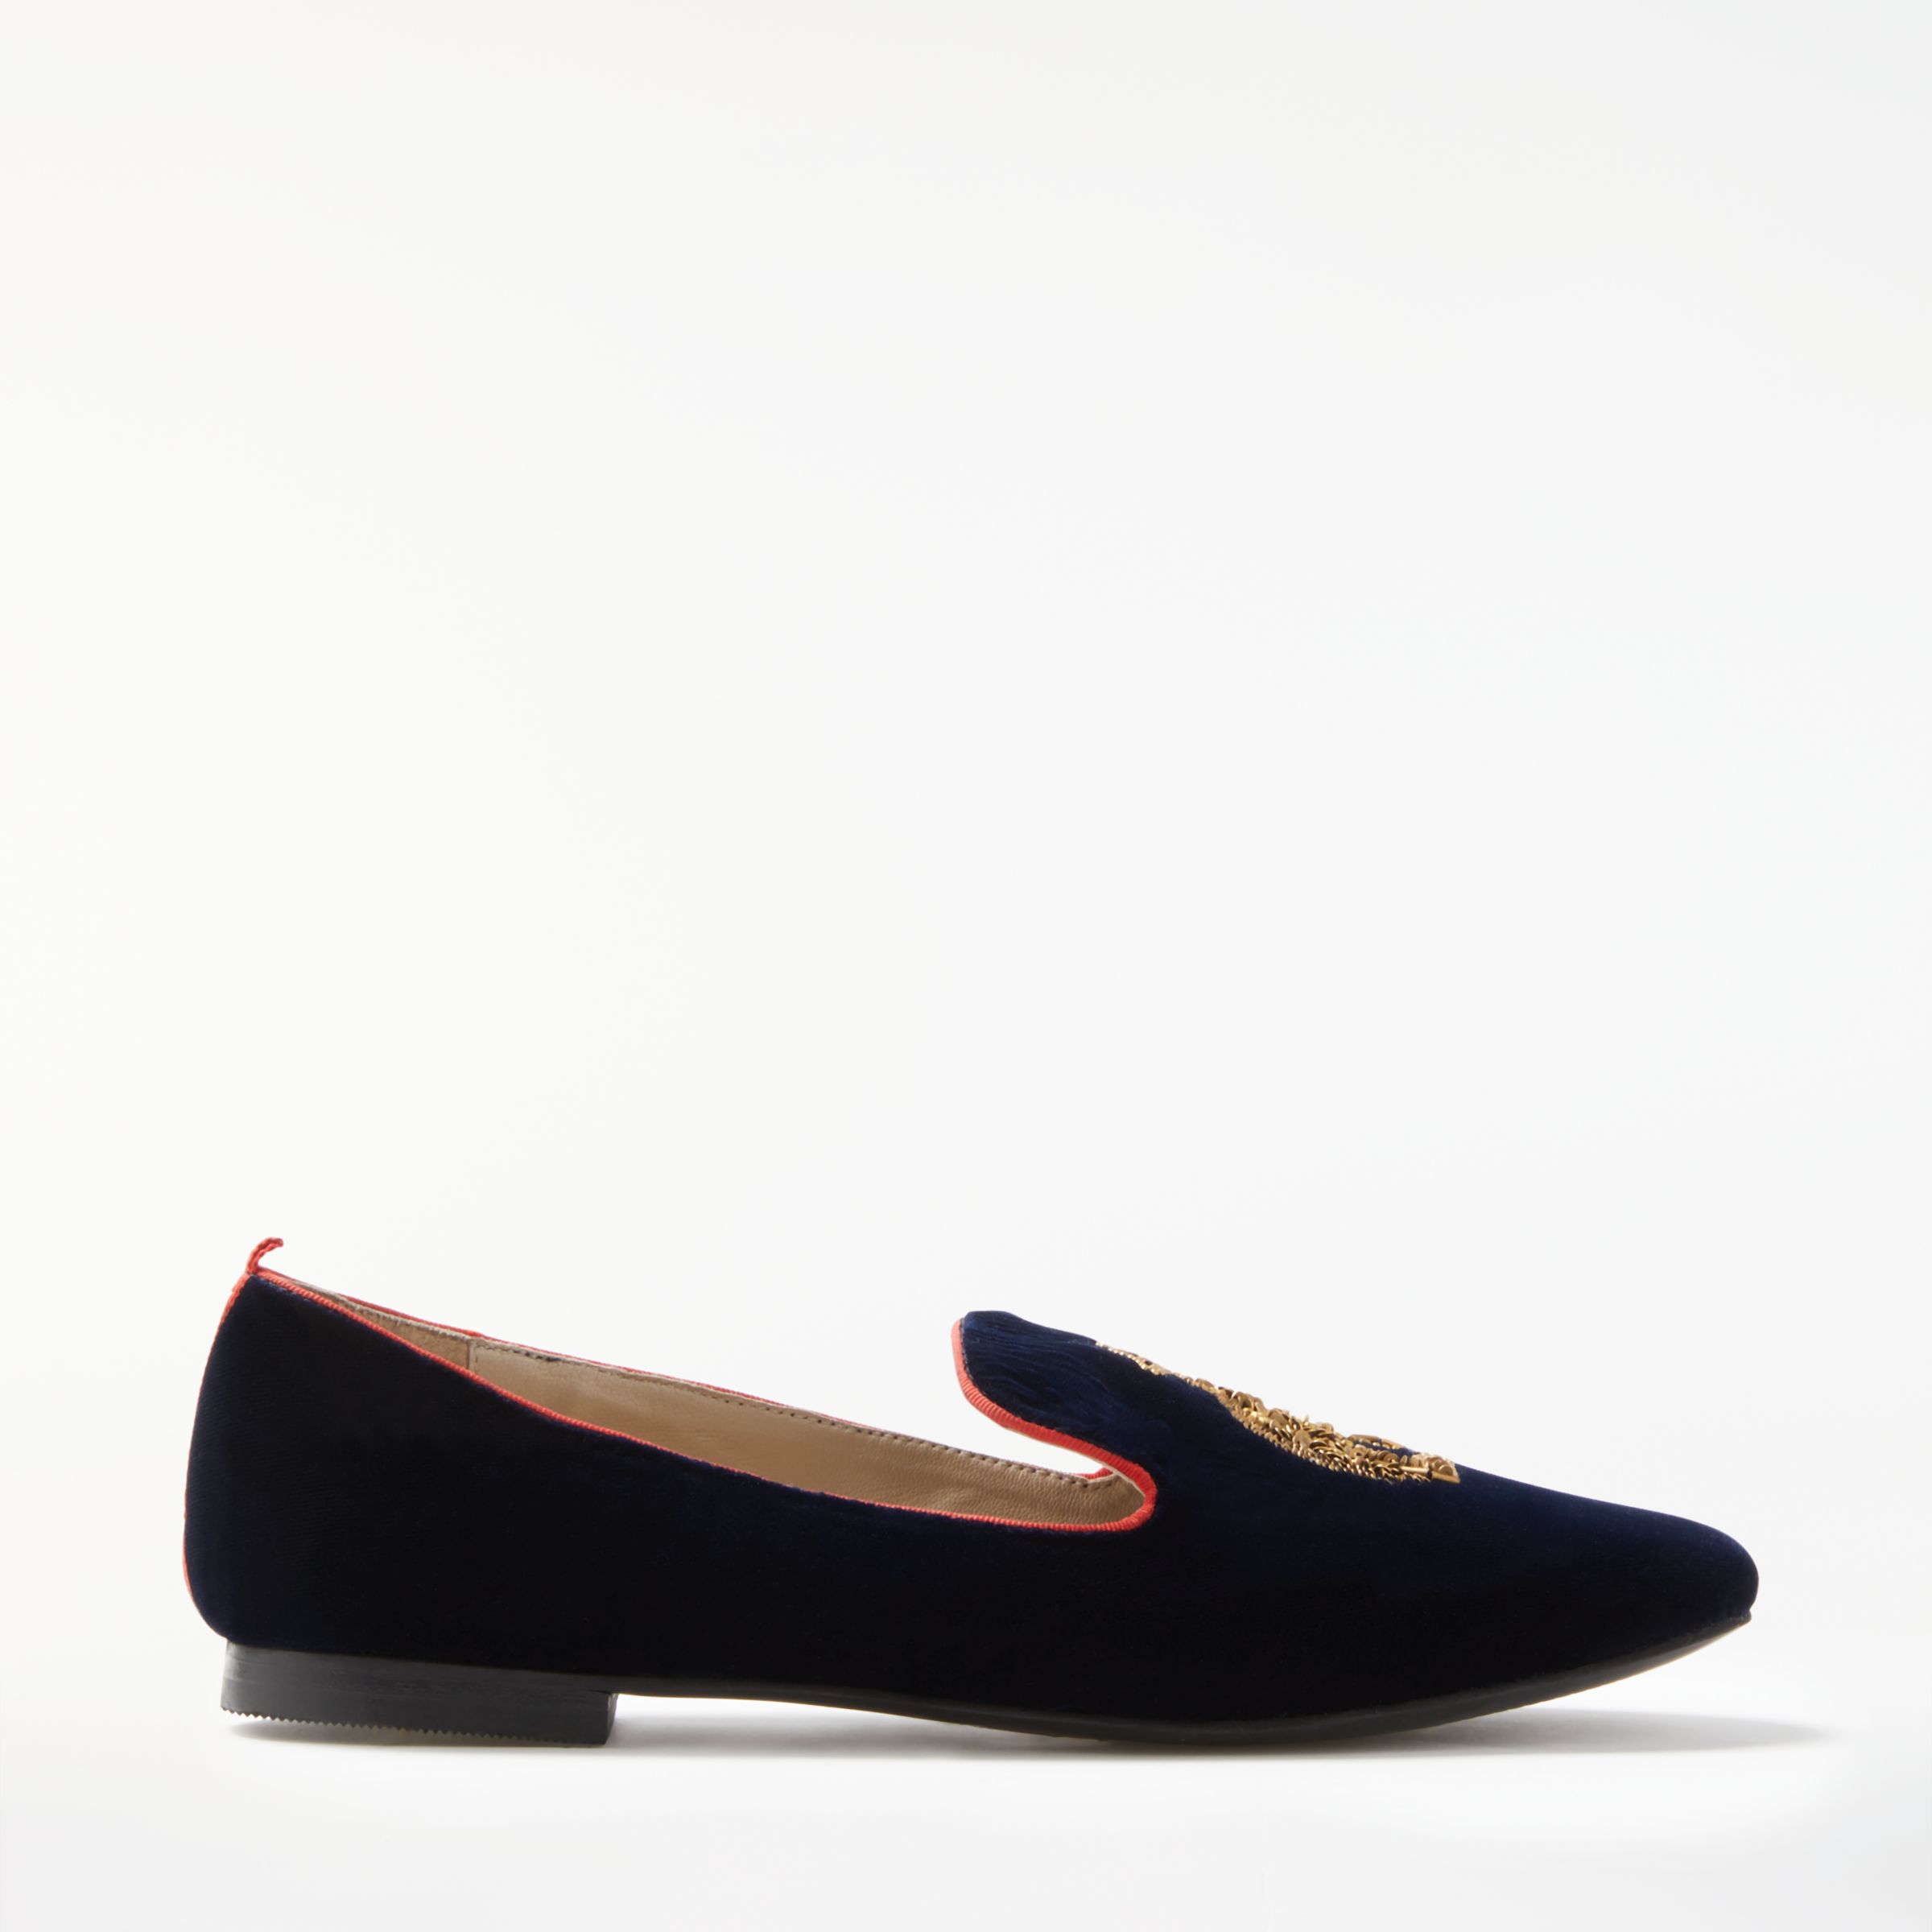 Boden Violetta Embellished Loafers, Navy, 5